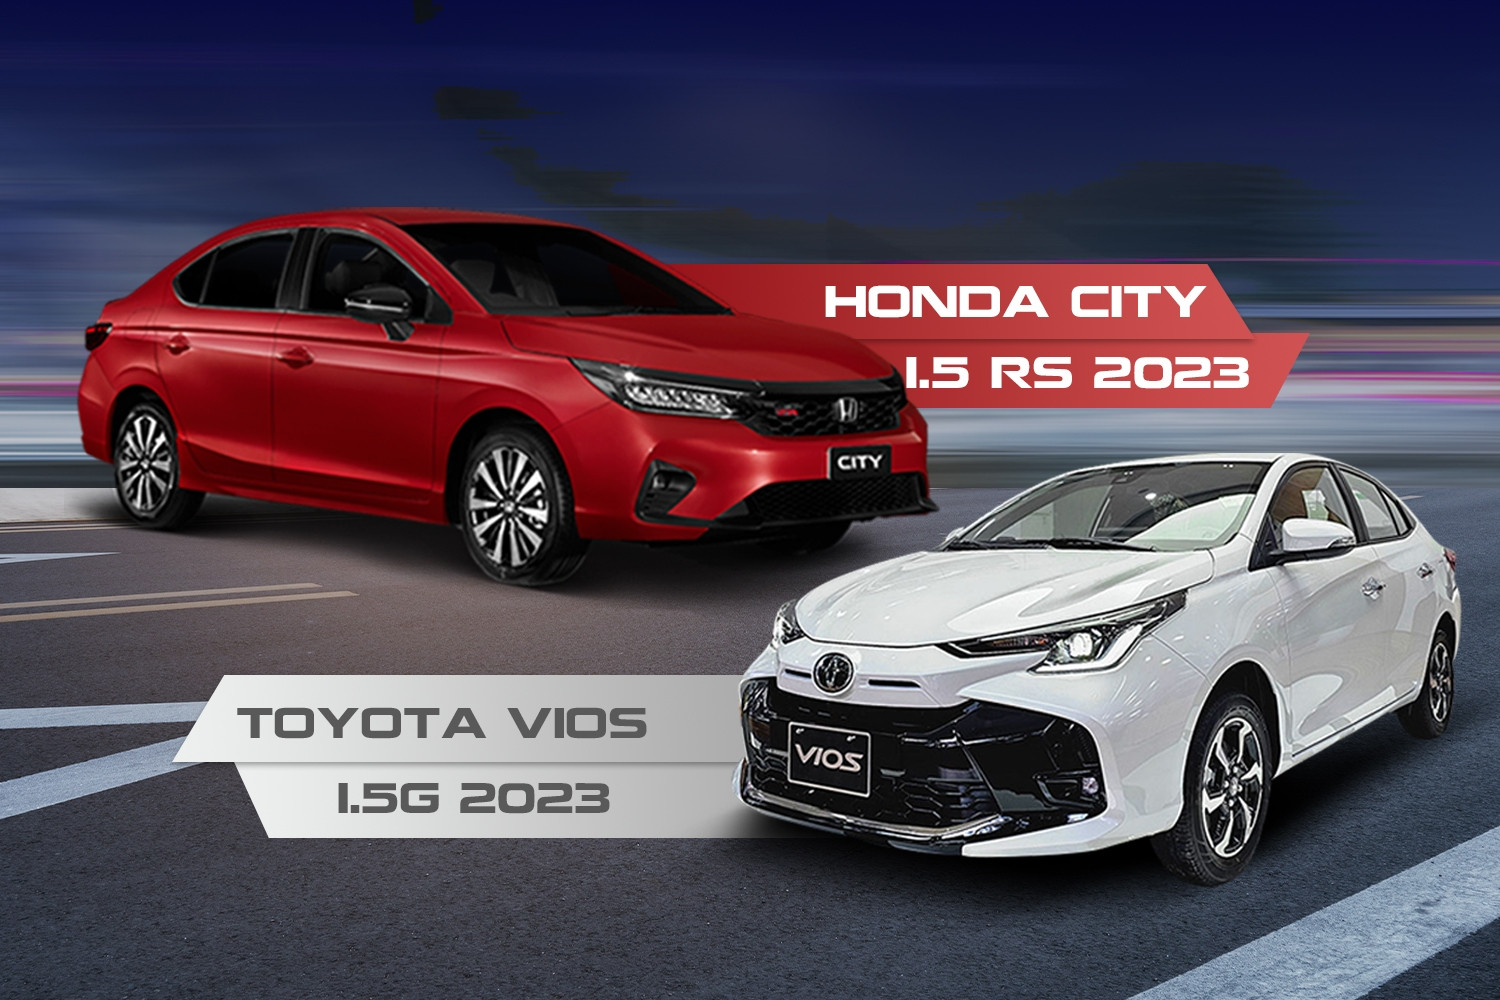 Tầm giá 600 triệu, chọn Toyota Vios 1.5G 2023 hay Honda City 1.5 RS 2023?